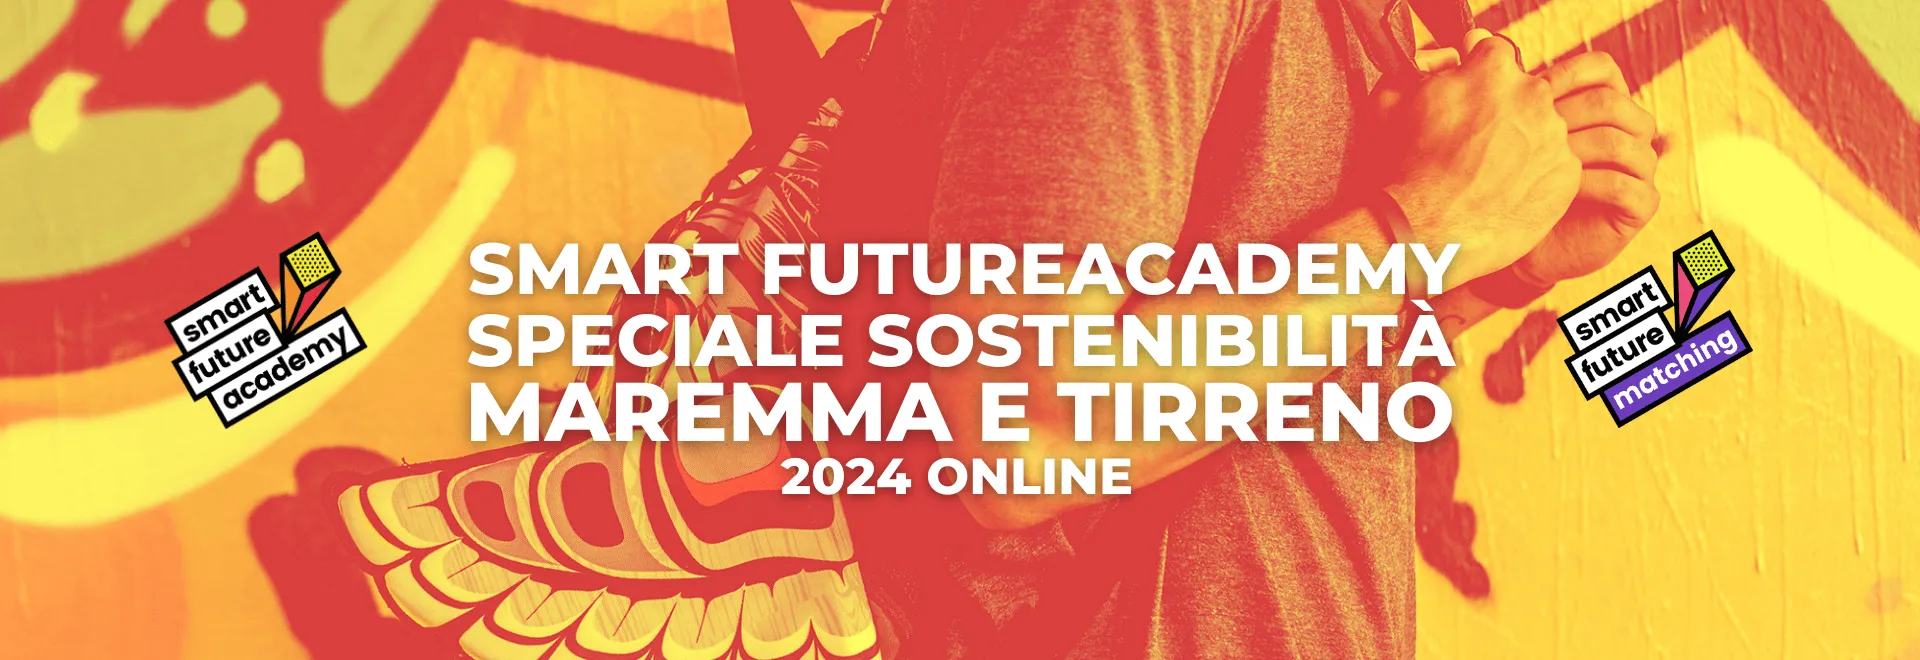 Speciale Sostenibilità Maremma e Tirreno 2024 Online